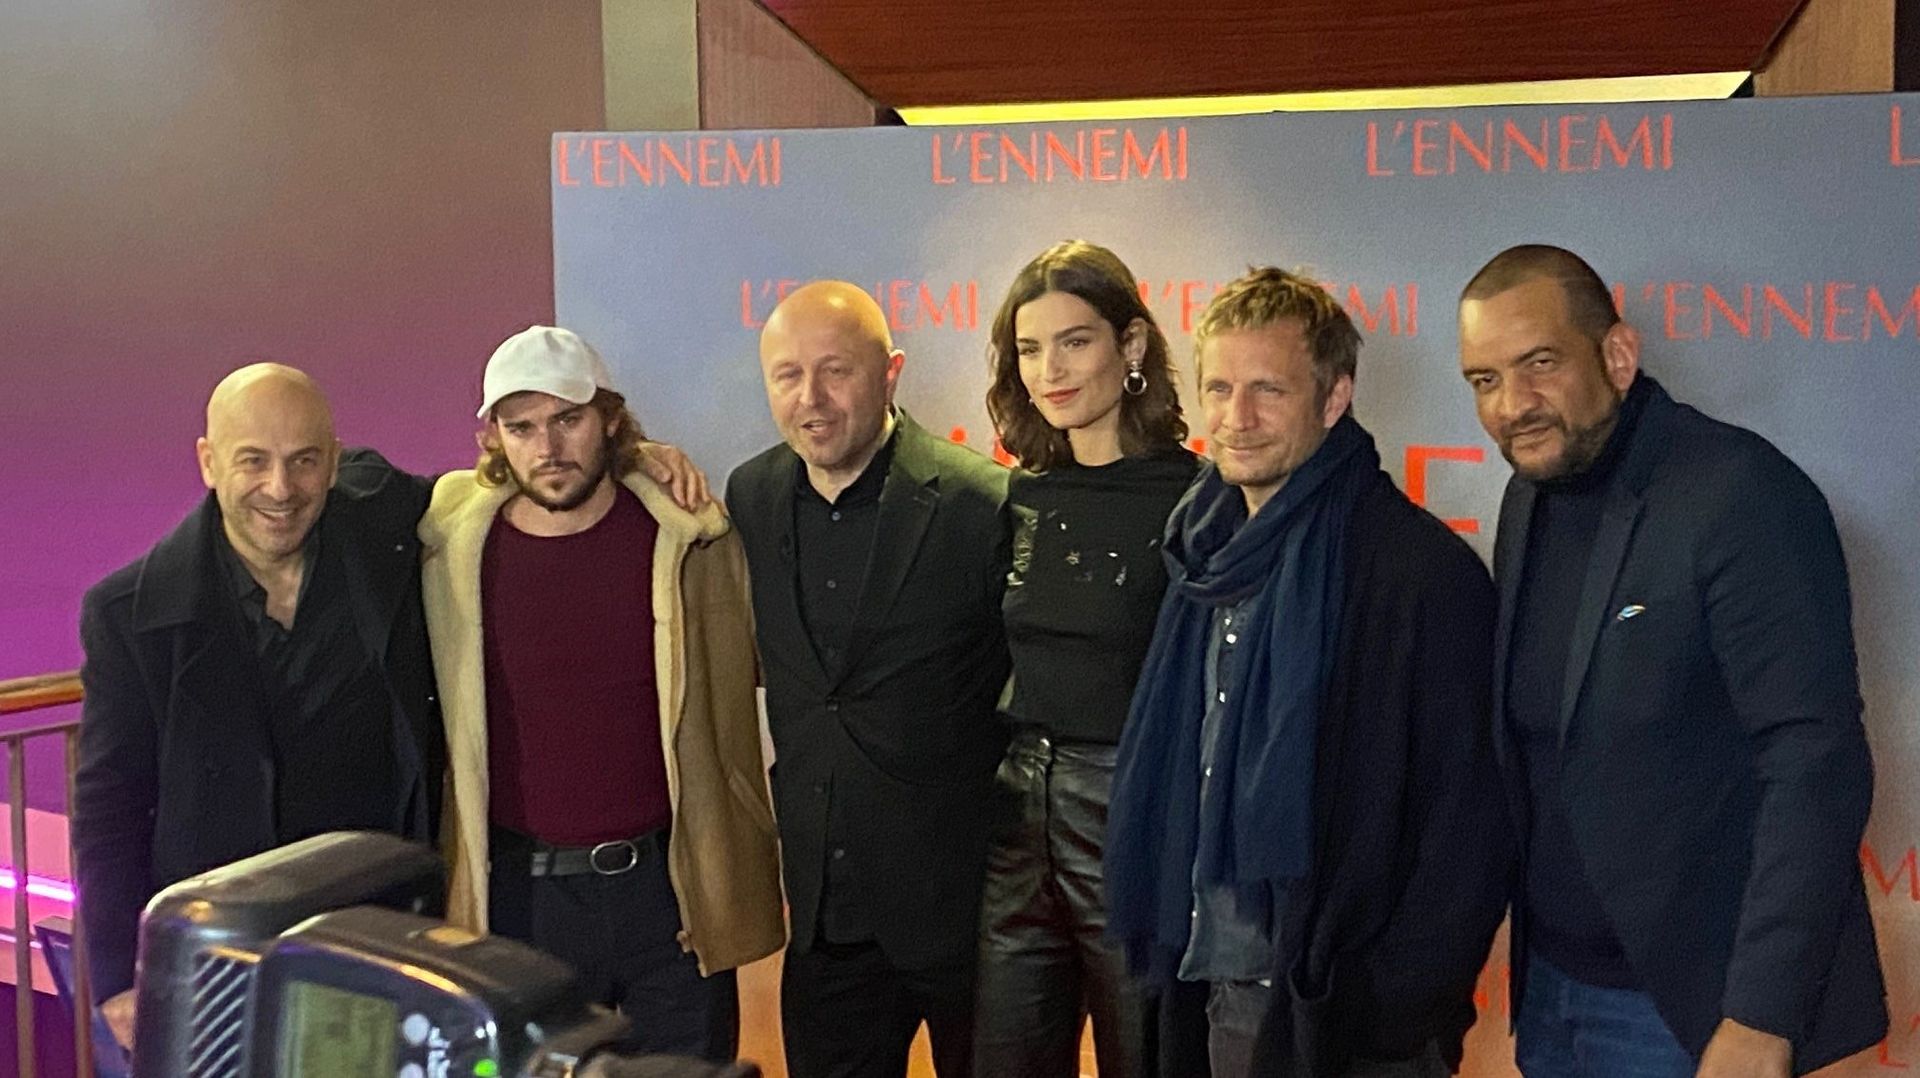 L'Ennemi", le nouveau film de Stephan Streker avec Jérémie Renier dans le rôle principal